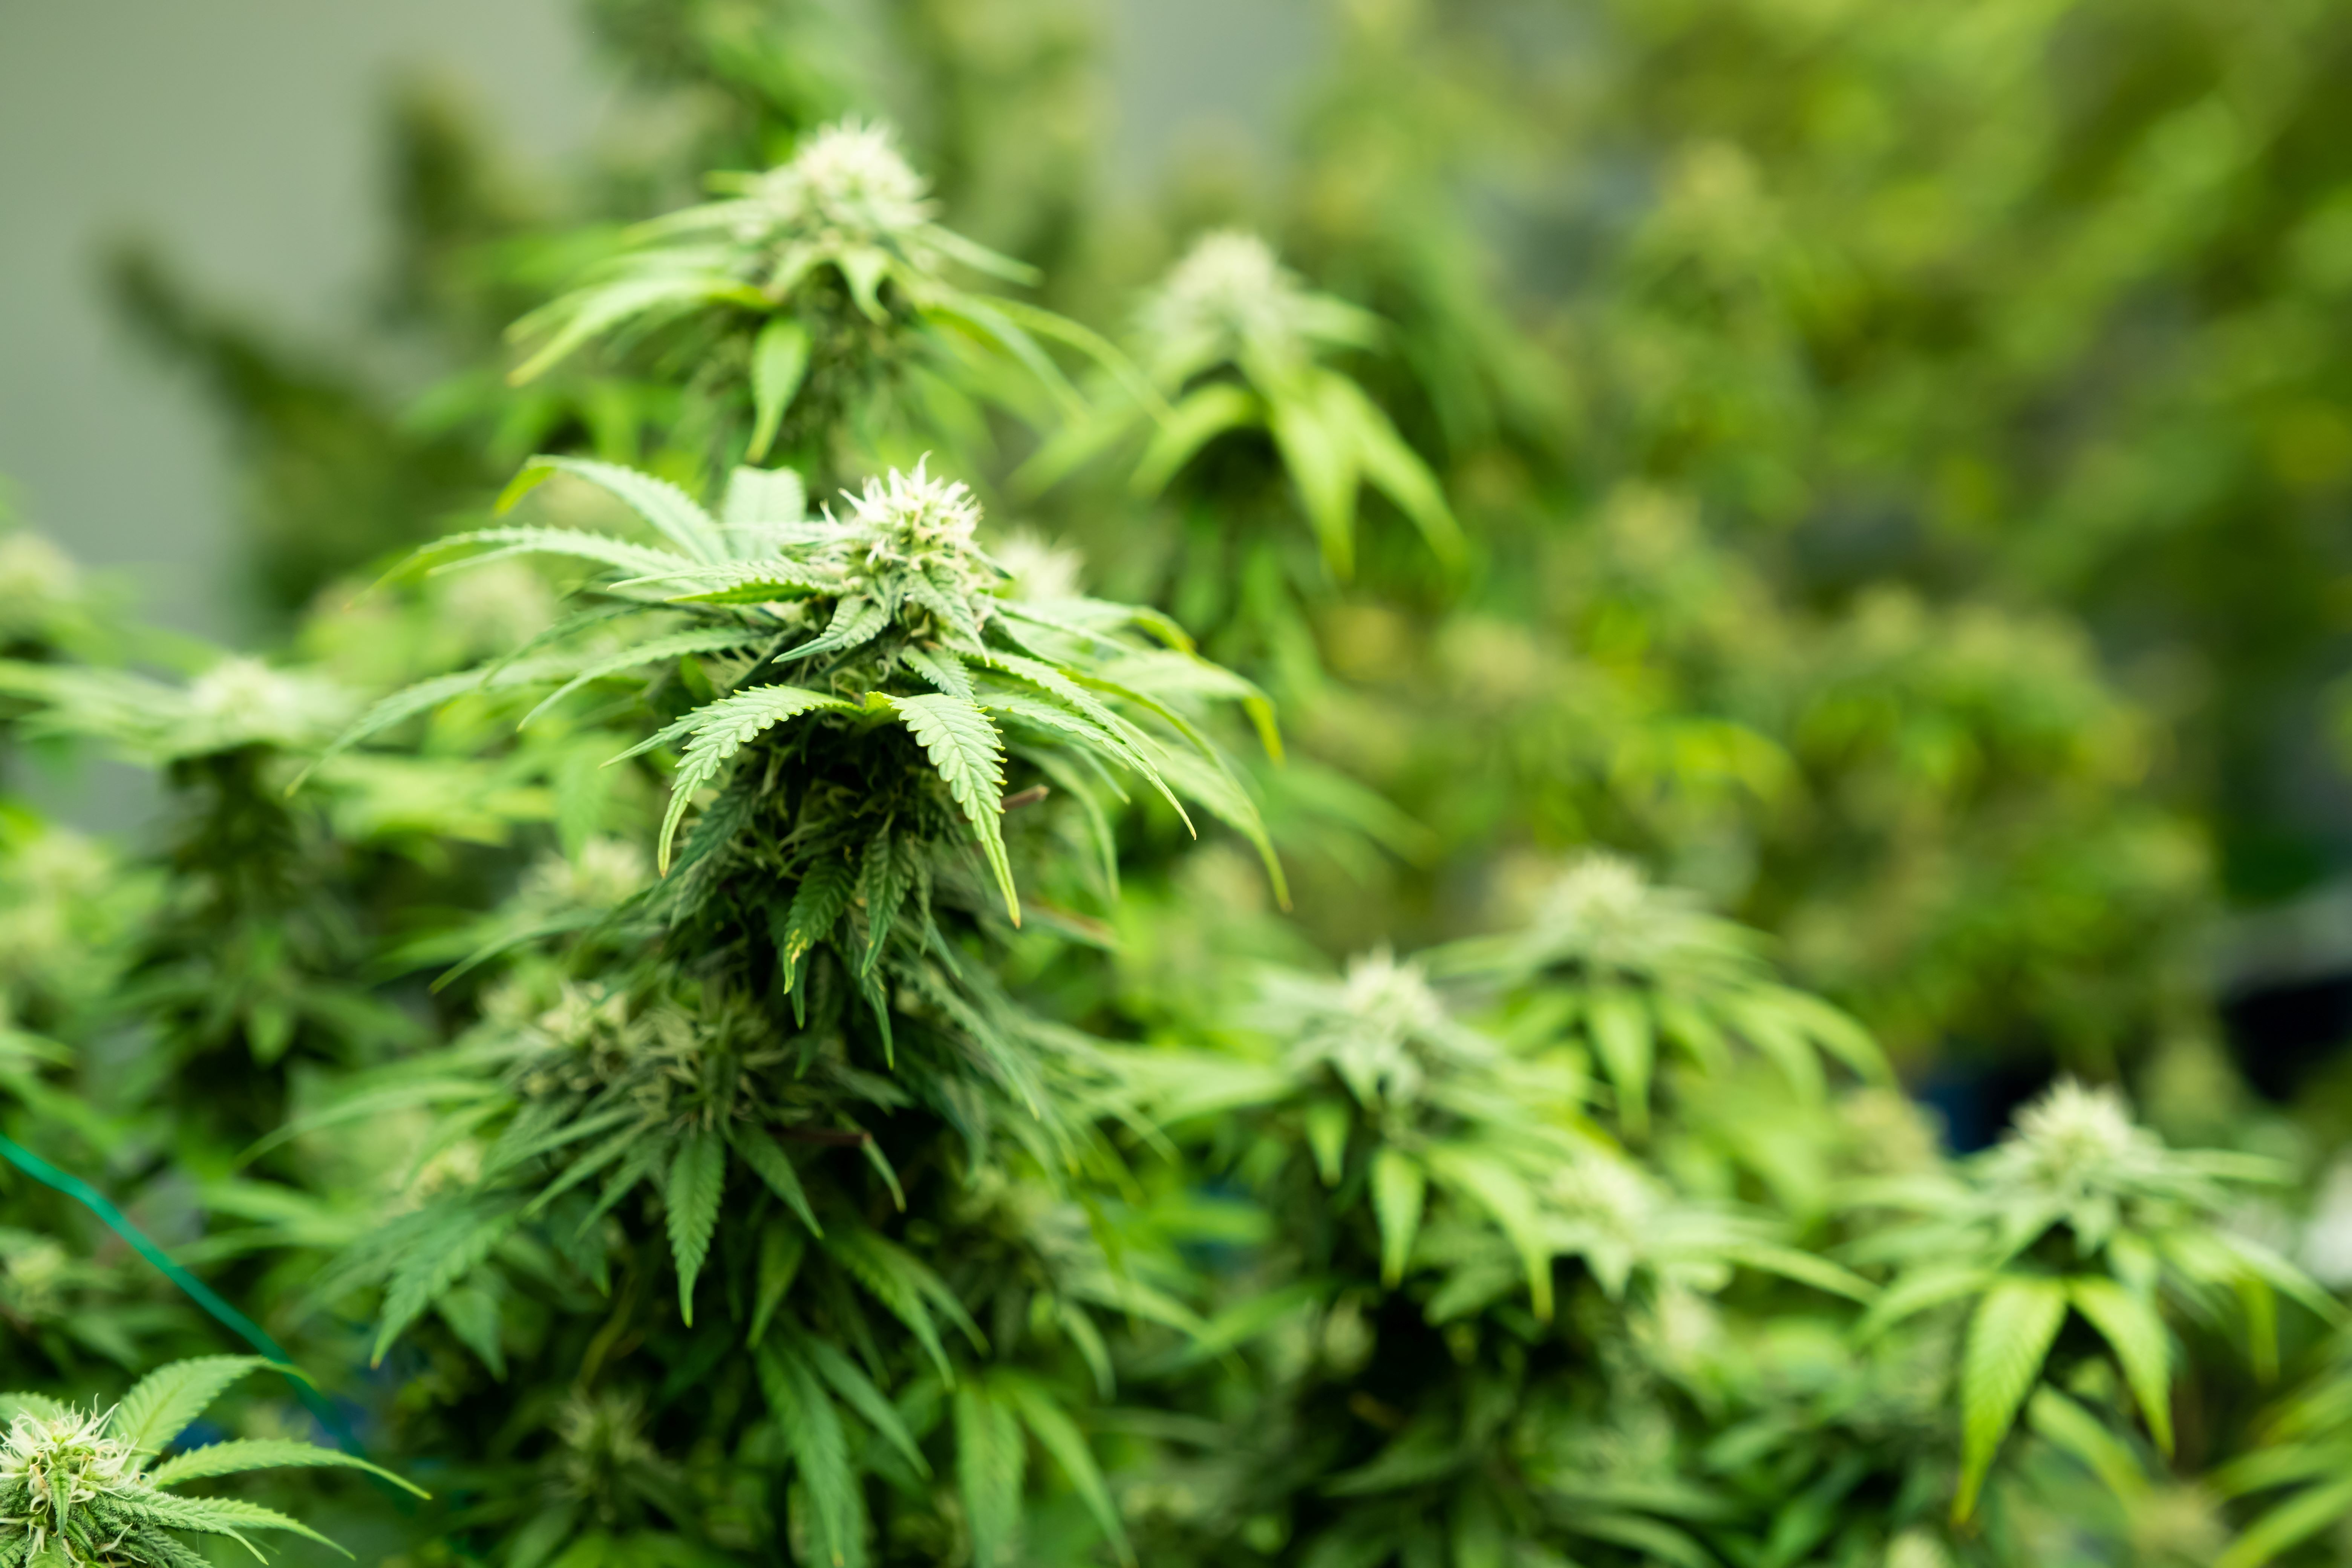 A group of marijuana plants